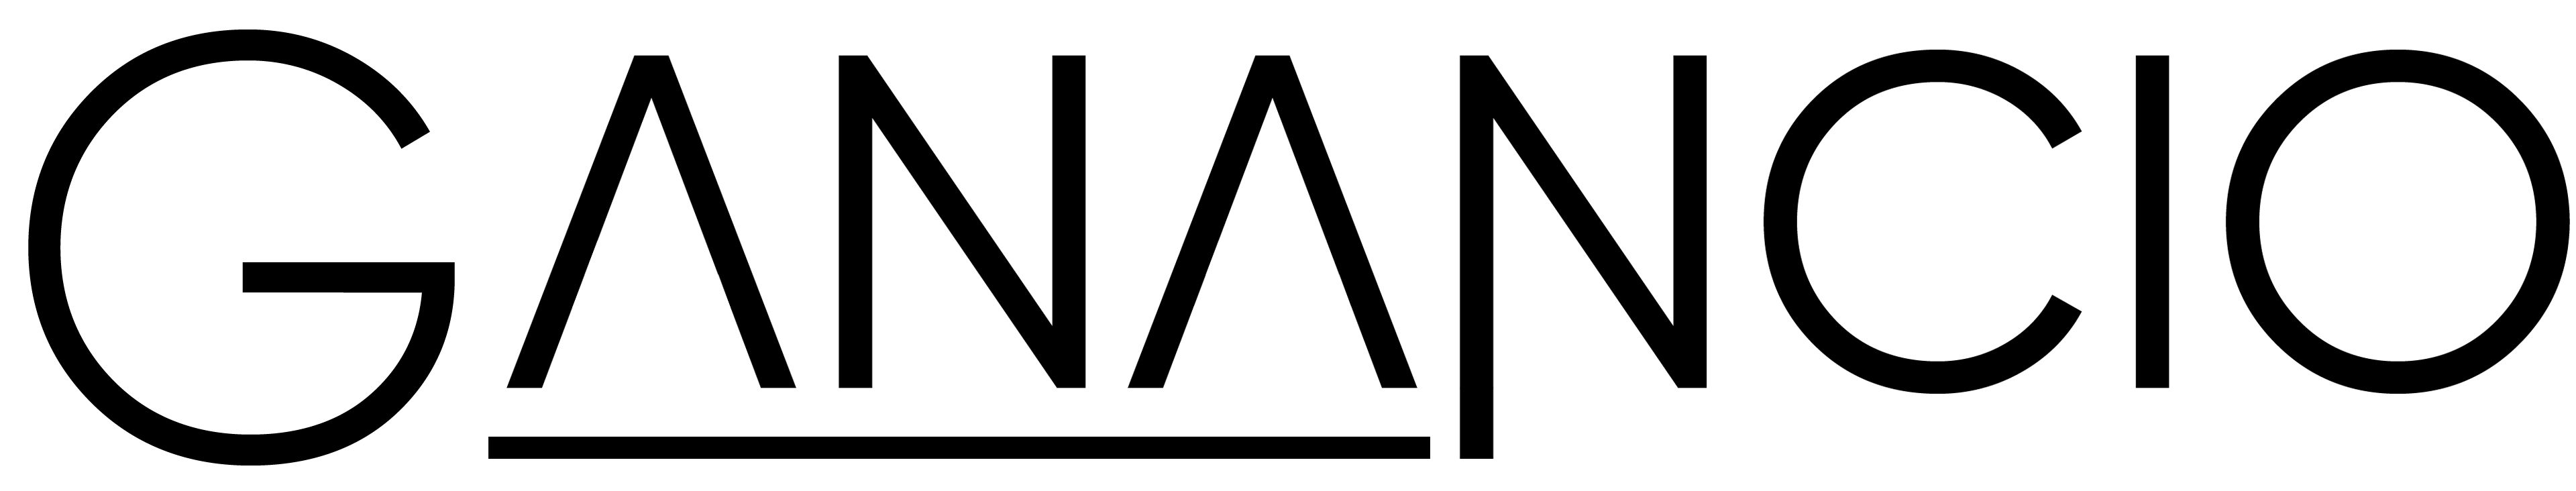 Ganancio Logo White